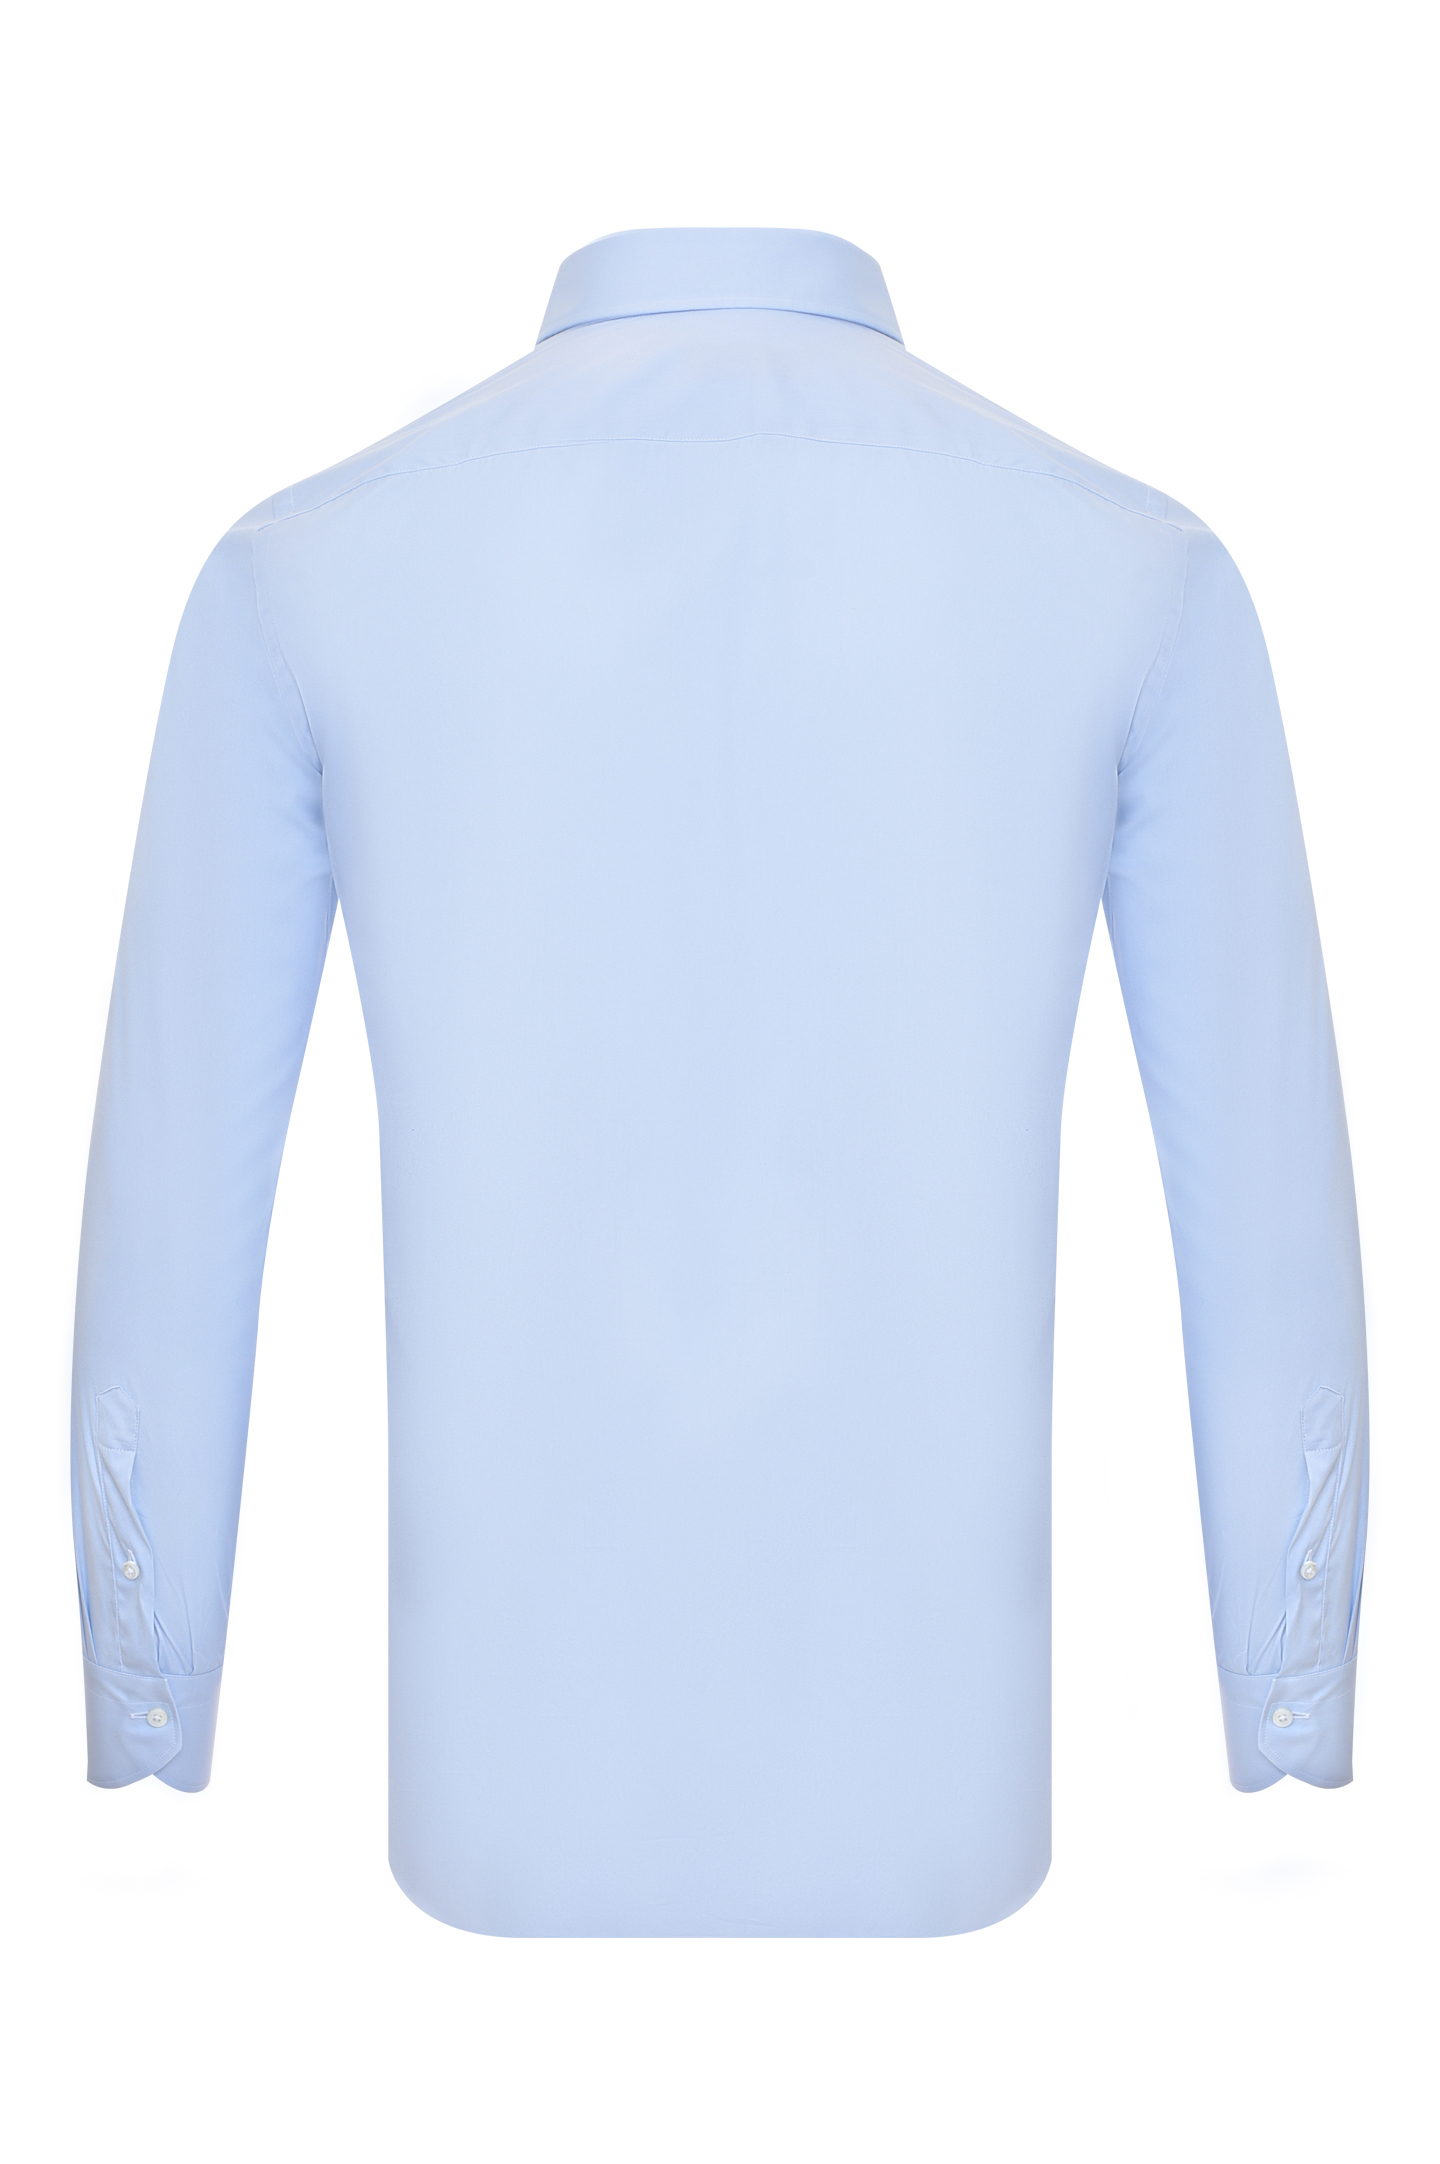 Рубашка CANALI GA01222 7A1, цвет: Голубой, Мужской